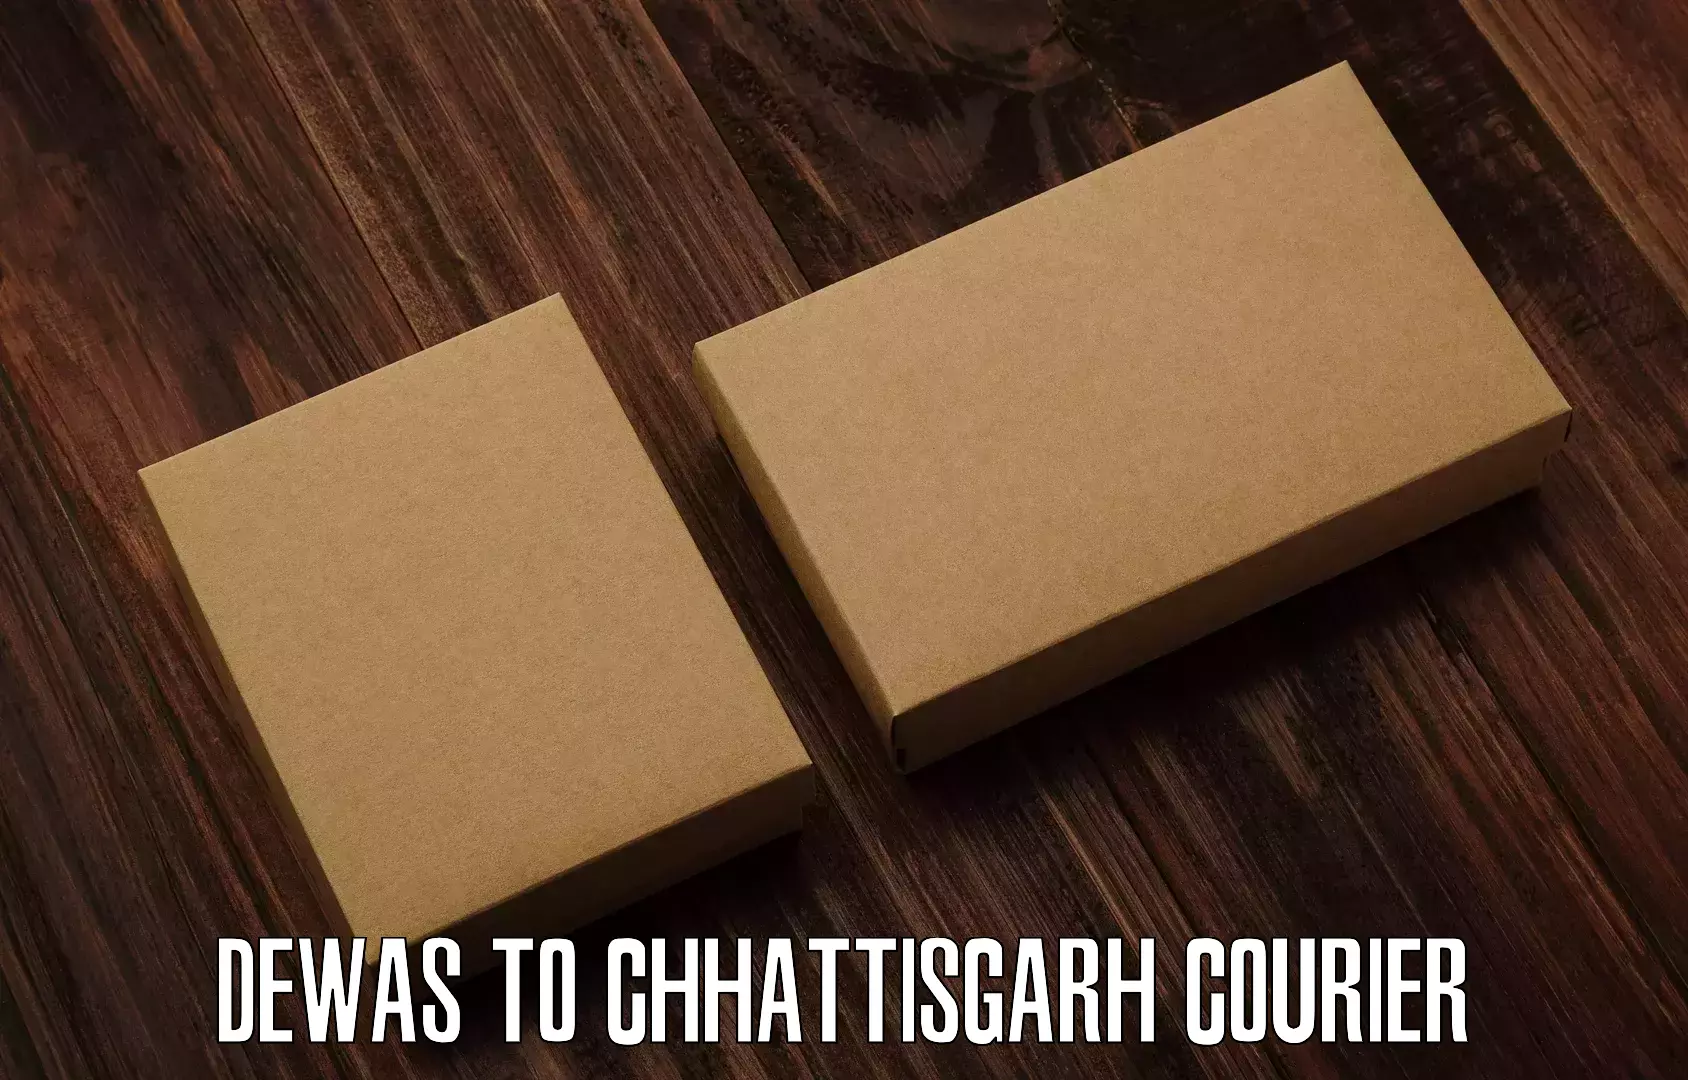 User-friendly delivery service Dewas to Chhattisgarh